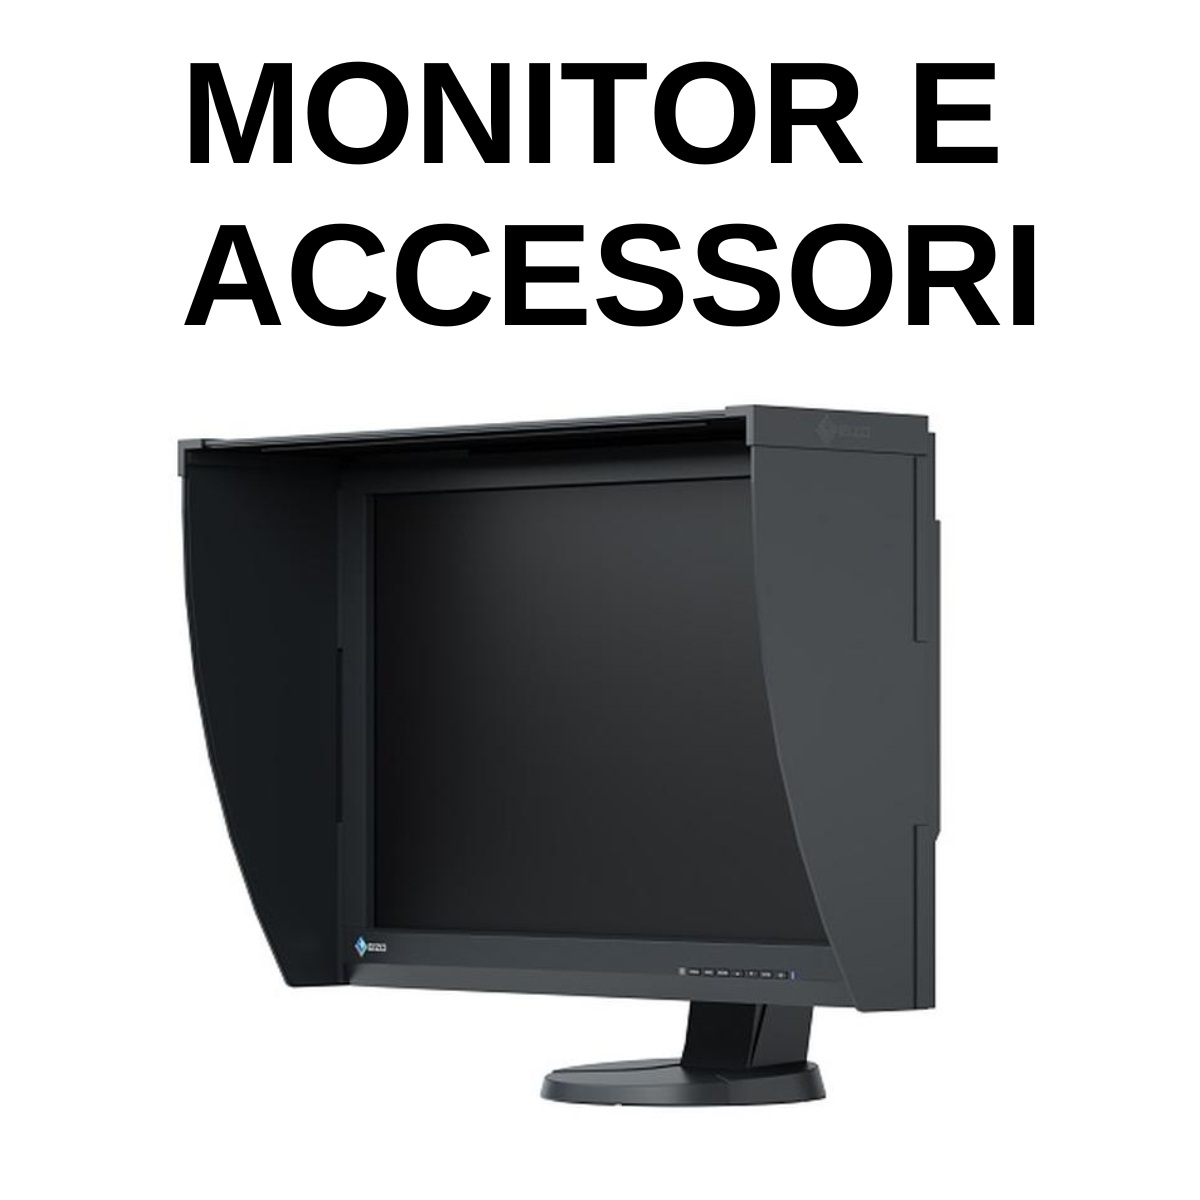 Monitor & accessori